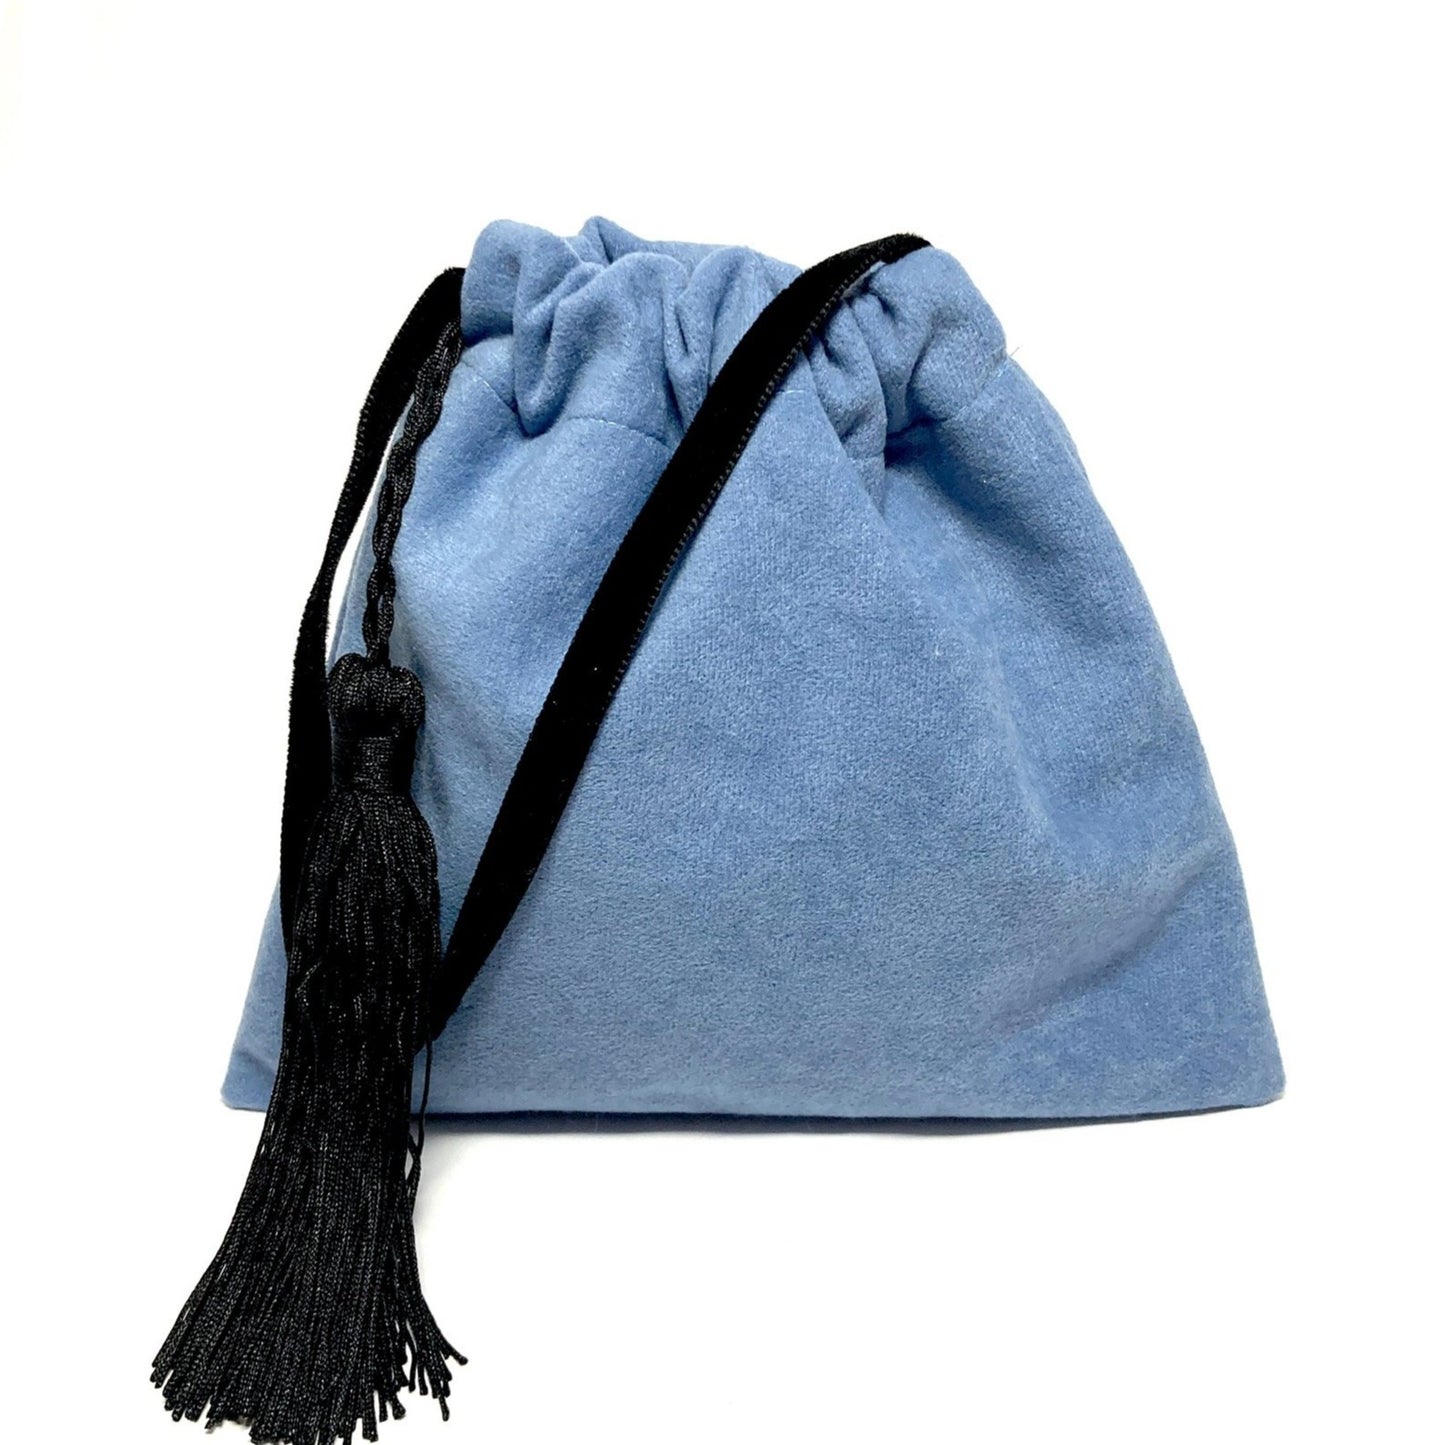 Little blue velvet handbag